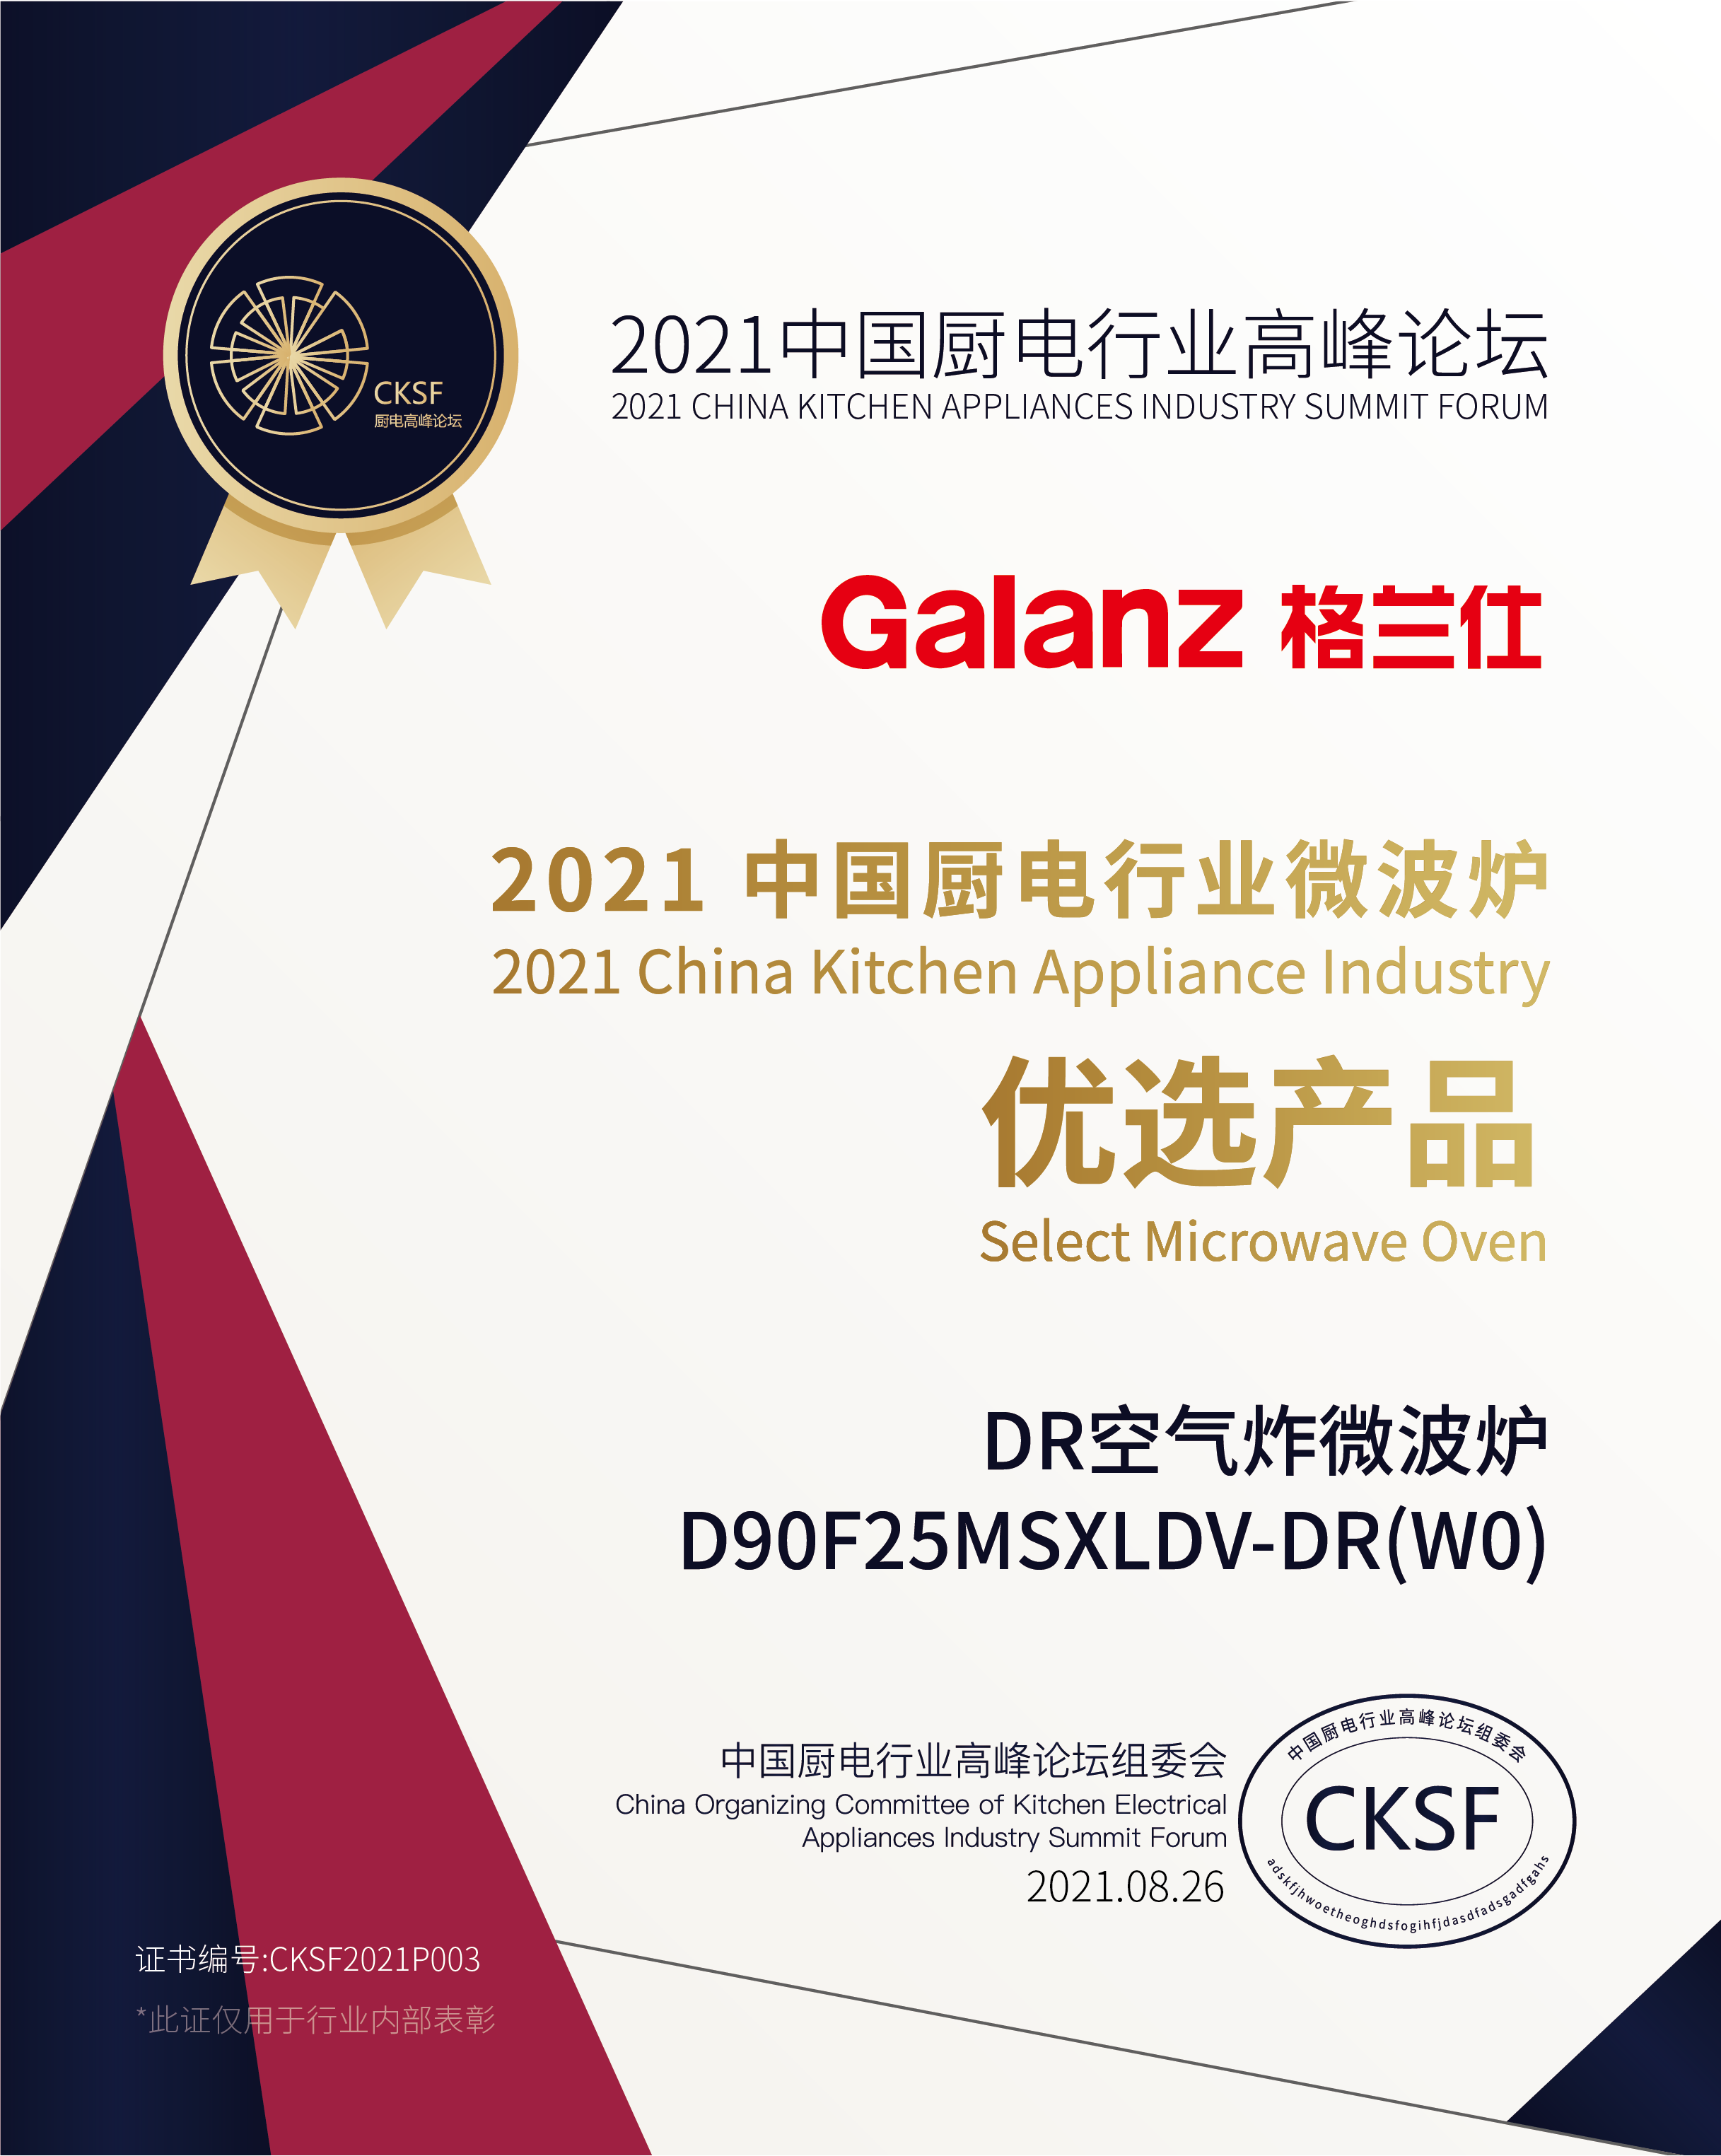 创新科技引领中国厨电发展 格兰仕斩获微蒸烤先锋品牌   智能公会